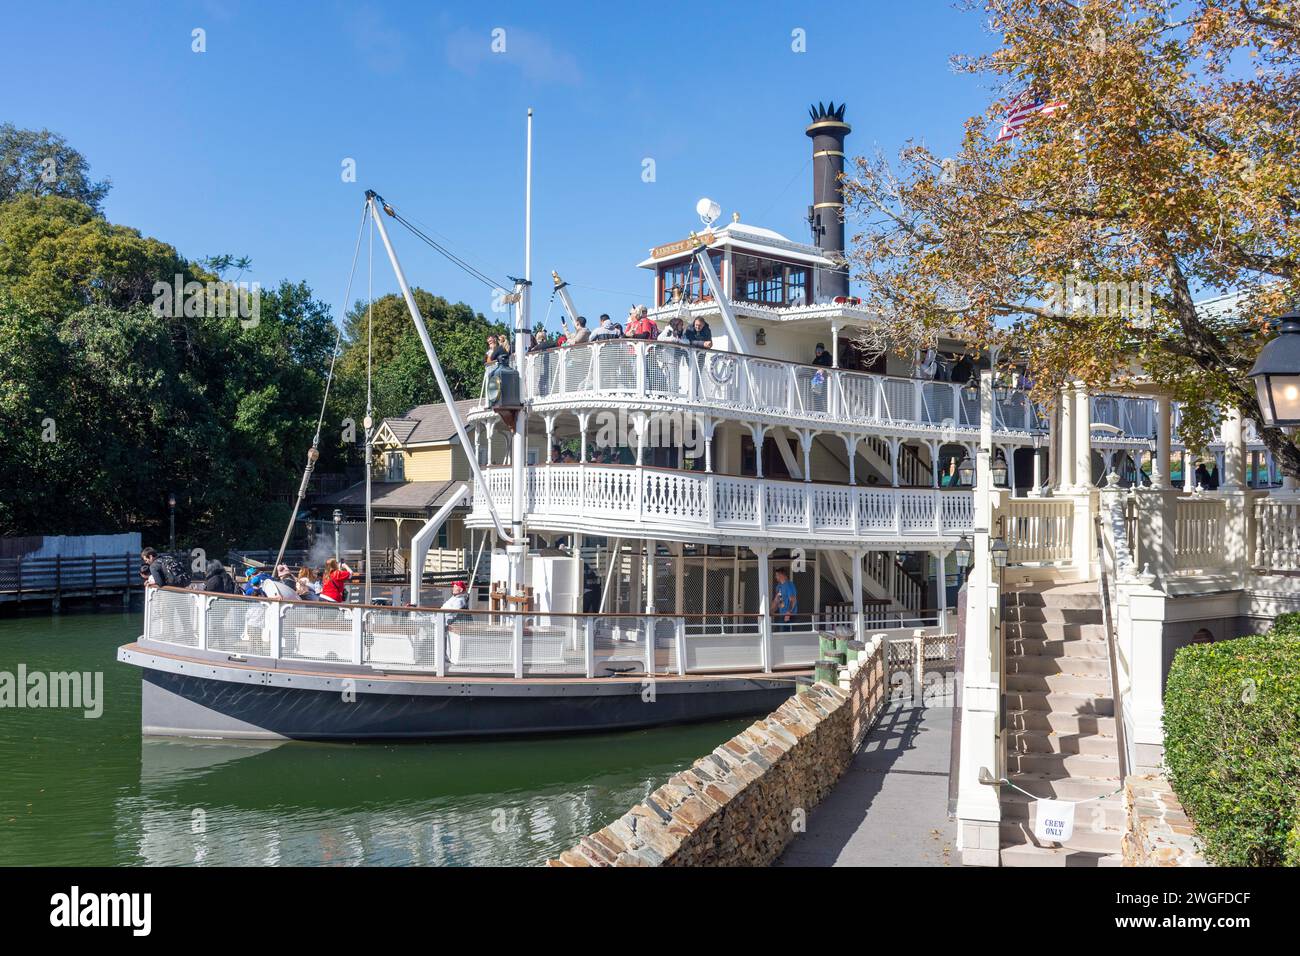 Liberty Square Riverboat, Liberty Square, Magic Kingdom, Walt Disney World Resort, Orlando, Floride, États-Unis d'Amérique Banque D'Images